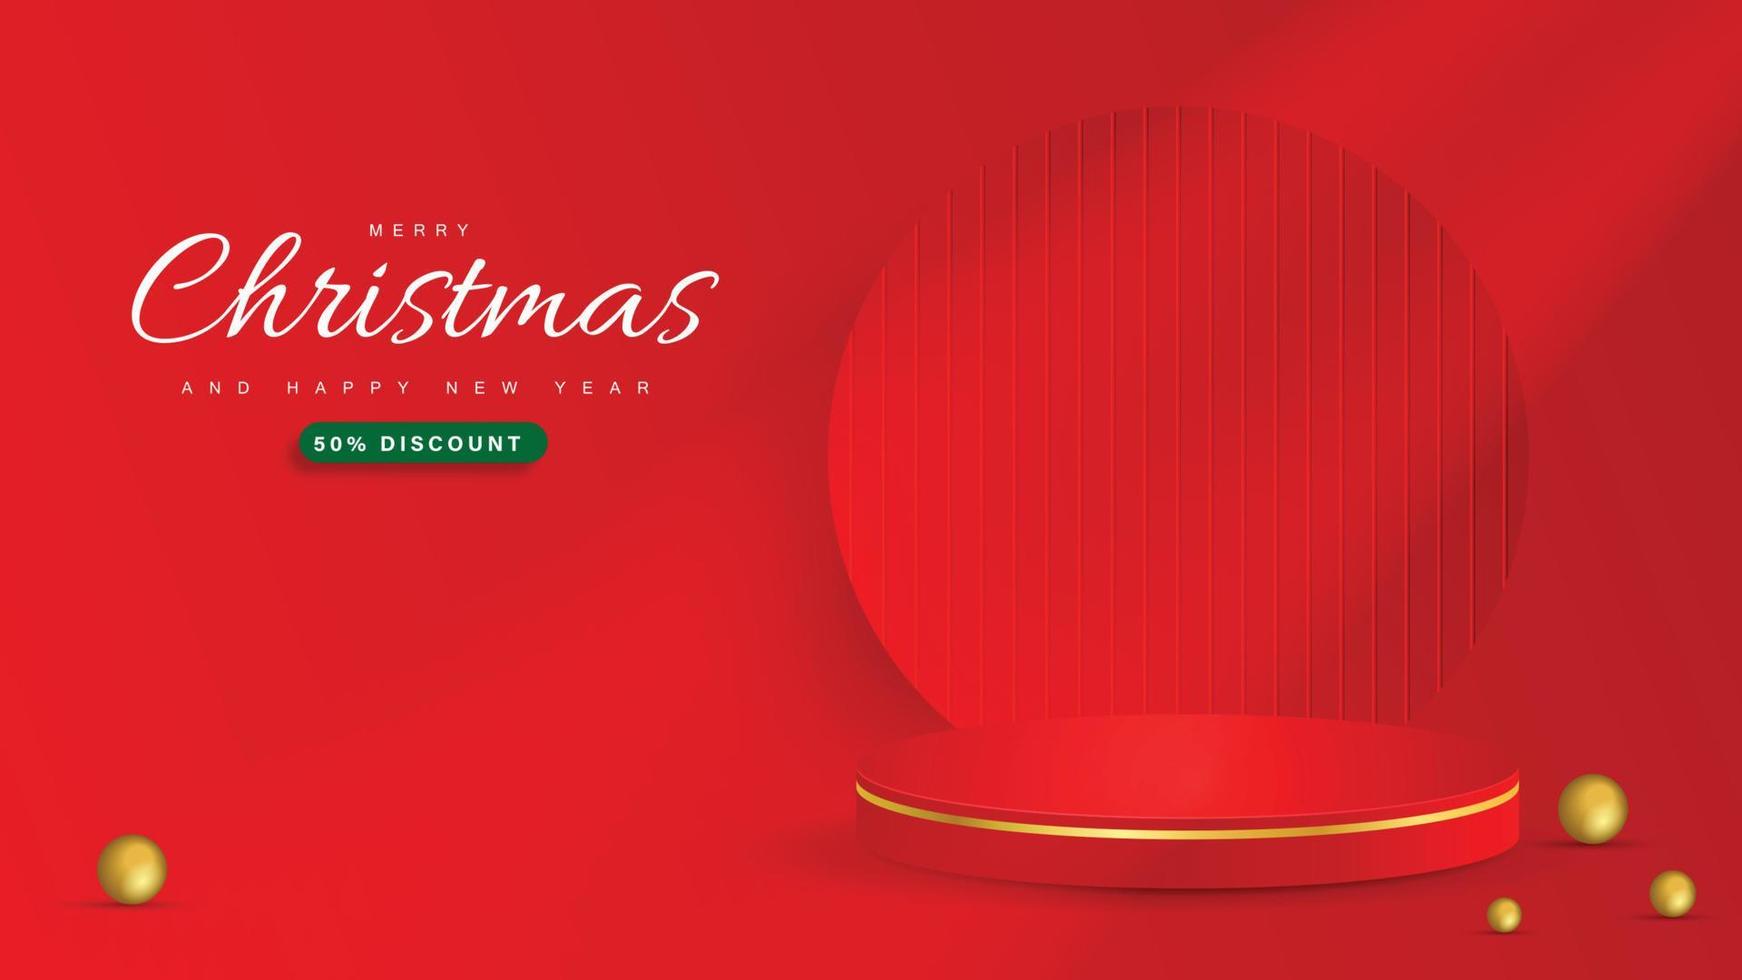 glad jul baner med produkt visa och minimal festlig dekorationer för jul röd bakgrund. vektor illustratör